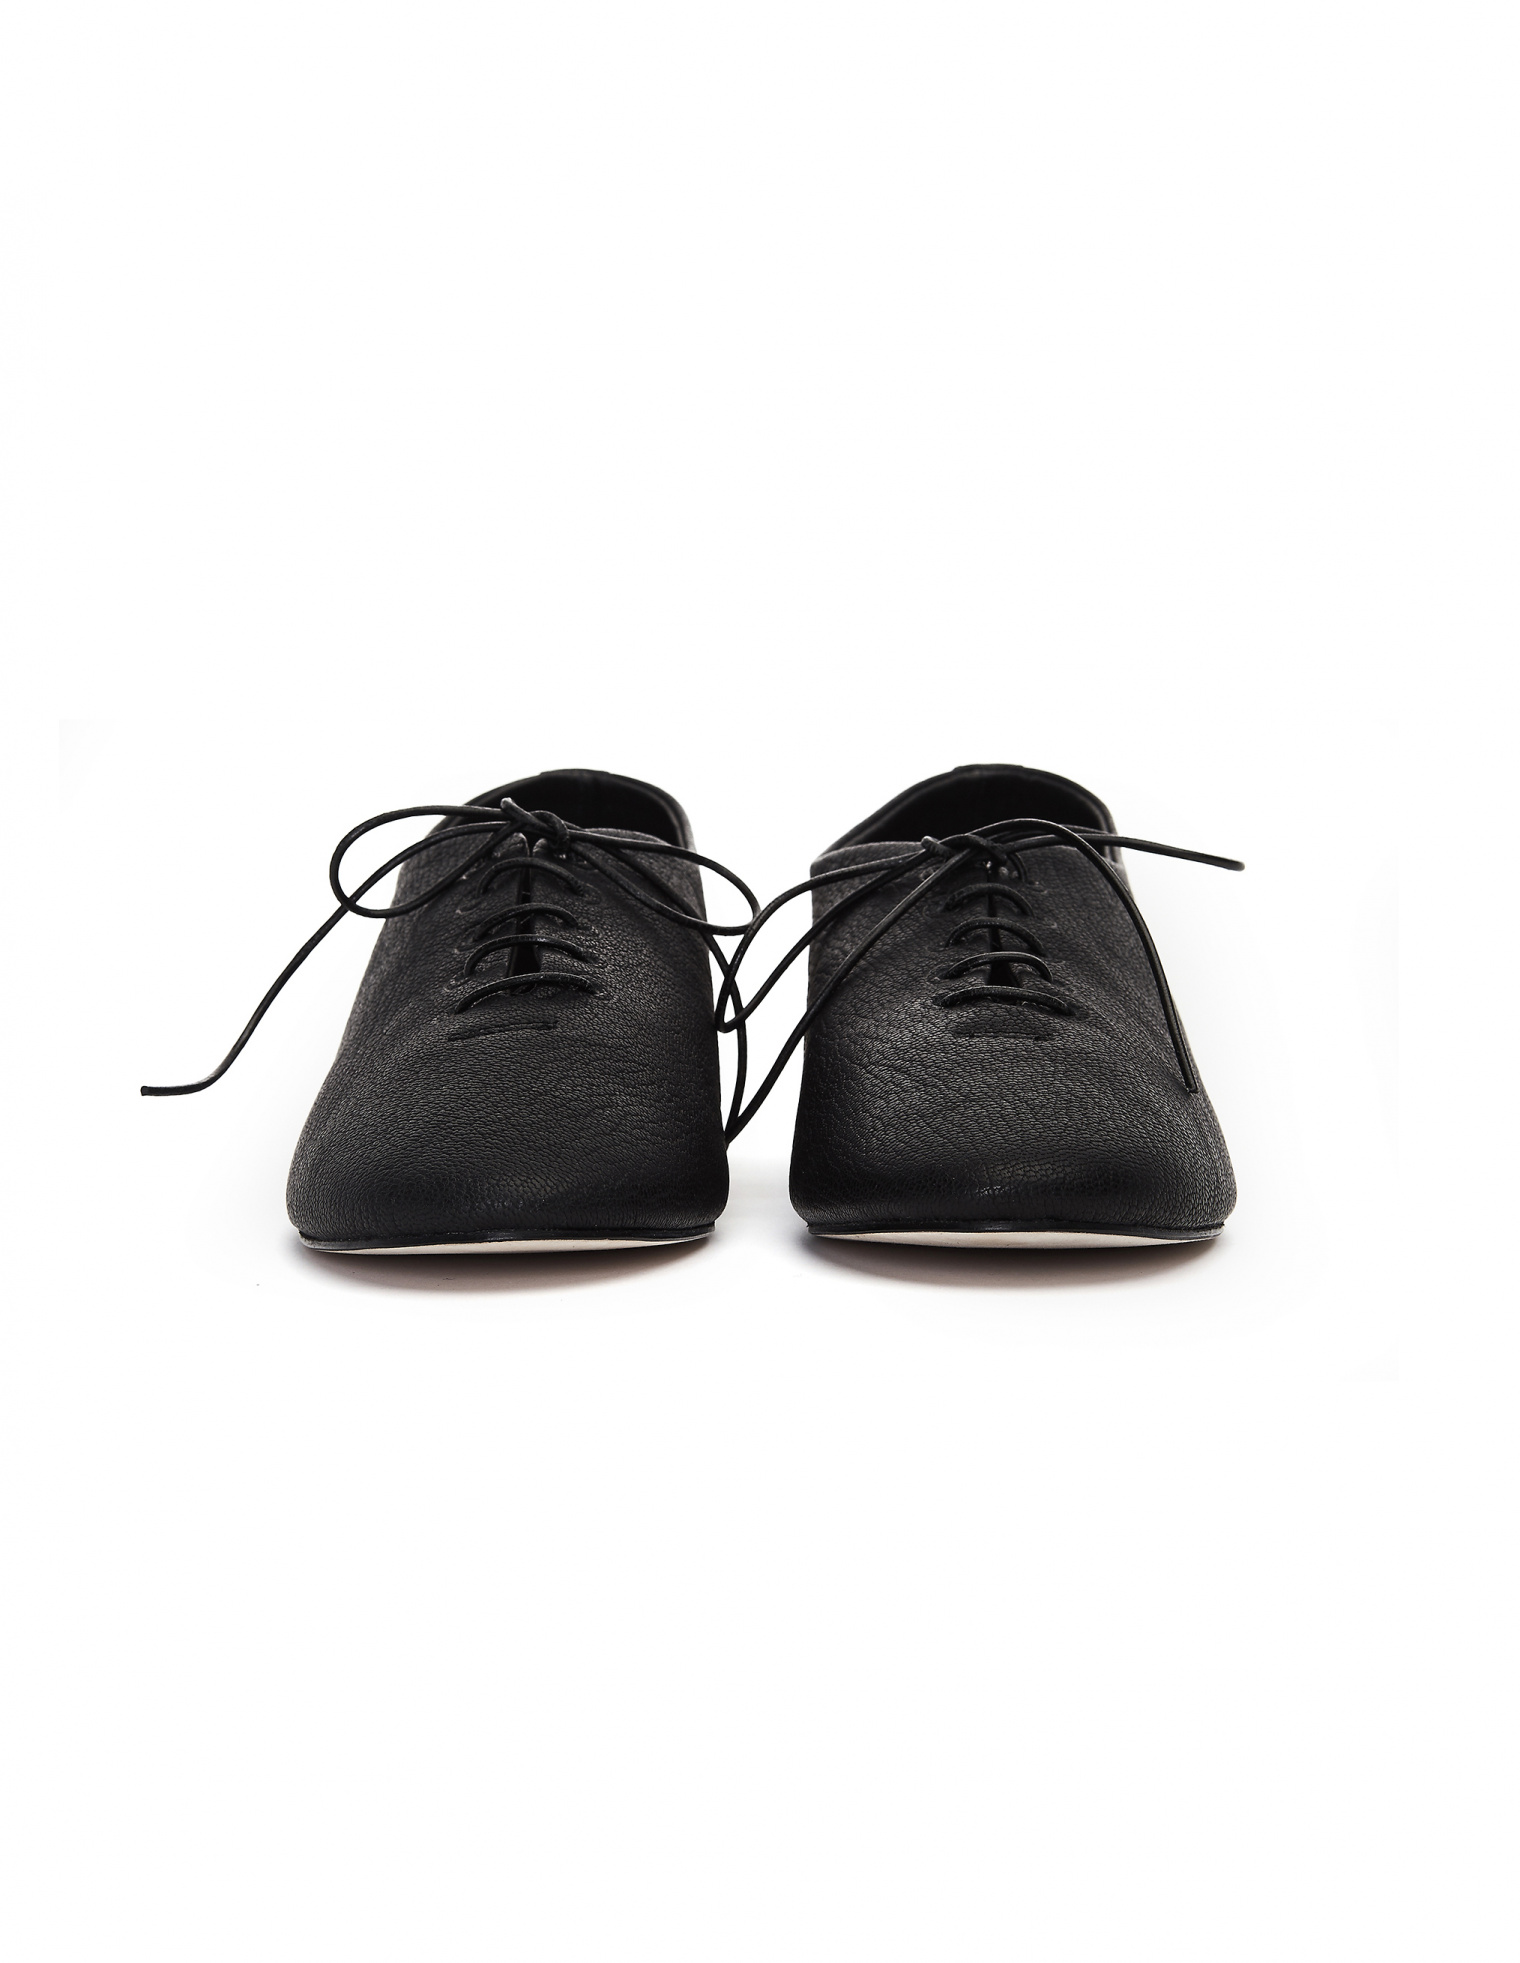 Hender Scheme Black Leather MIP-13 Boots